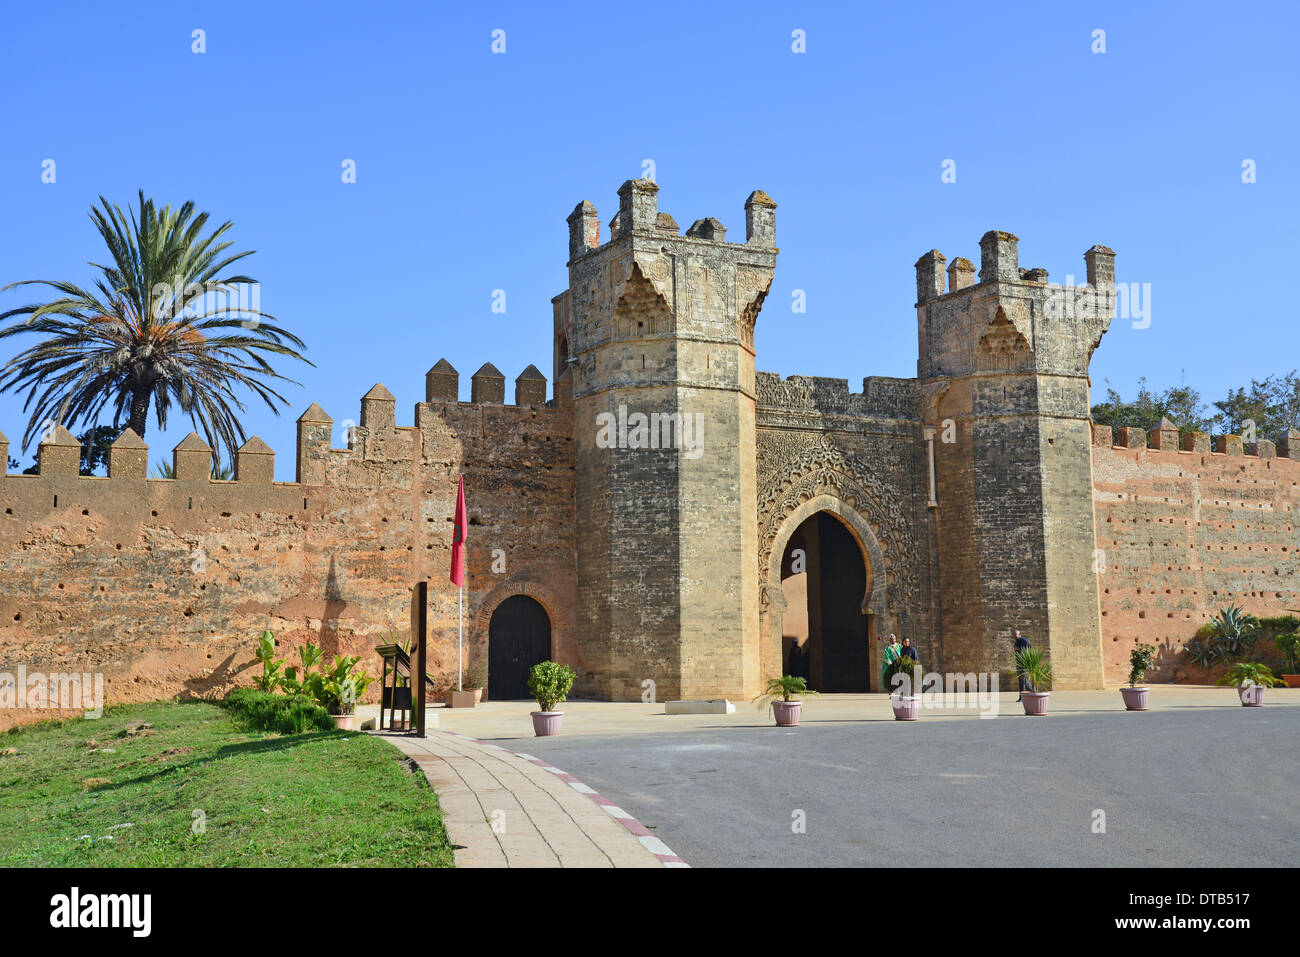 Eingangstor zum Chellah (Sala Colonia) römische Ausgrabungsstätte, Rabat, Rabat-Salé-Zemmour-Zaer Region, Königreich Marokko Stockfoto